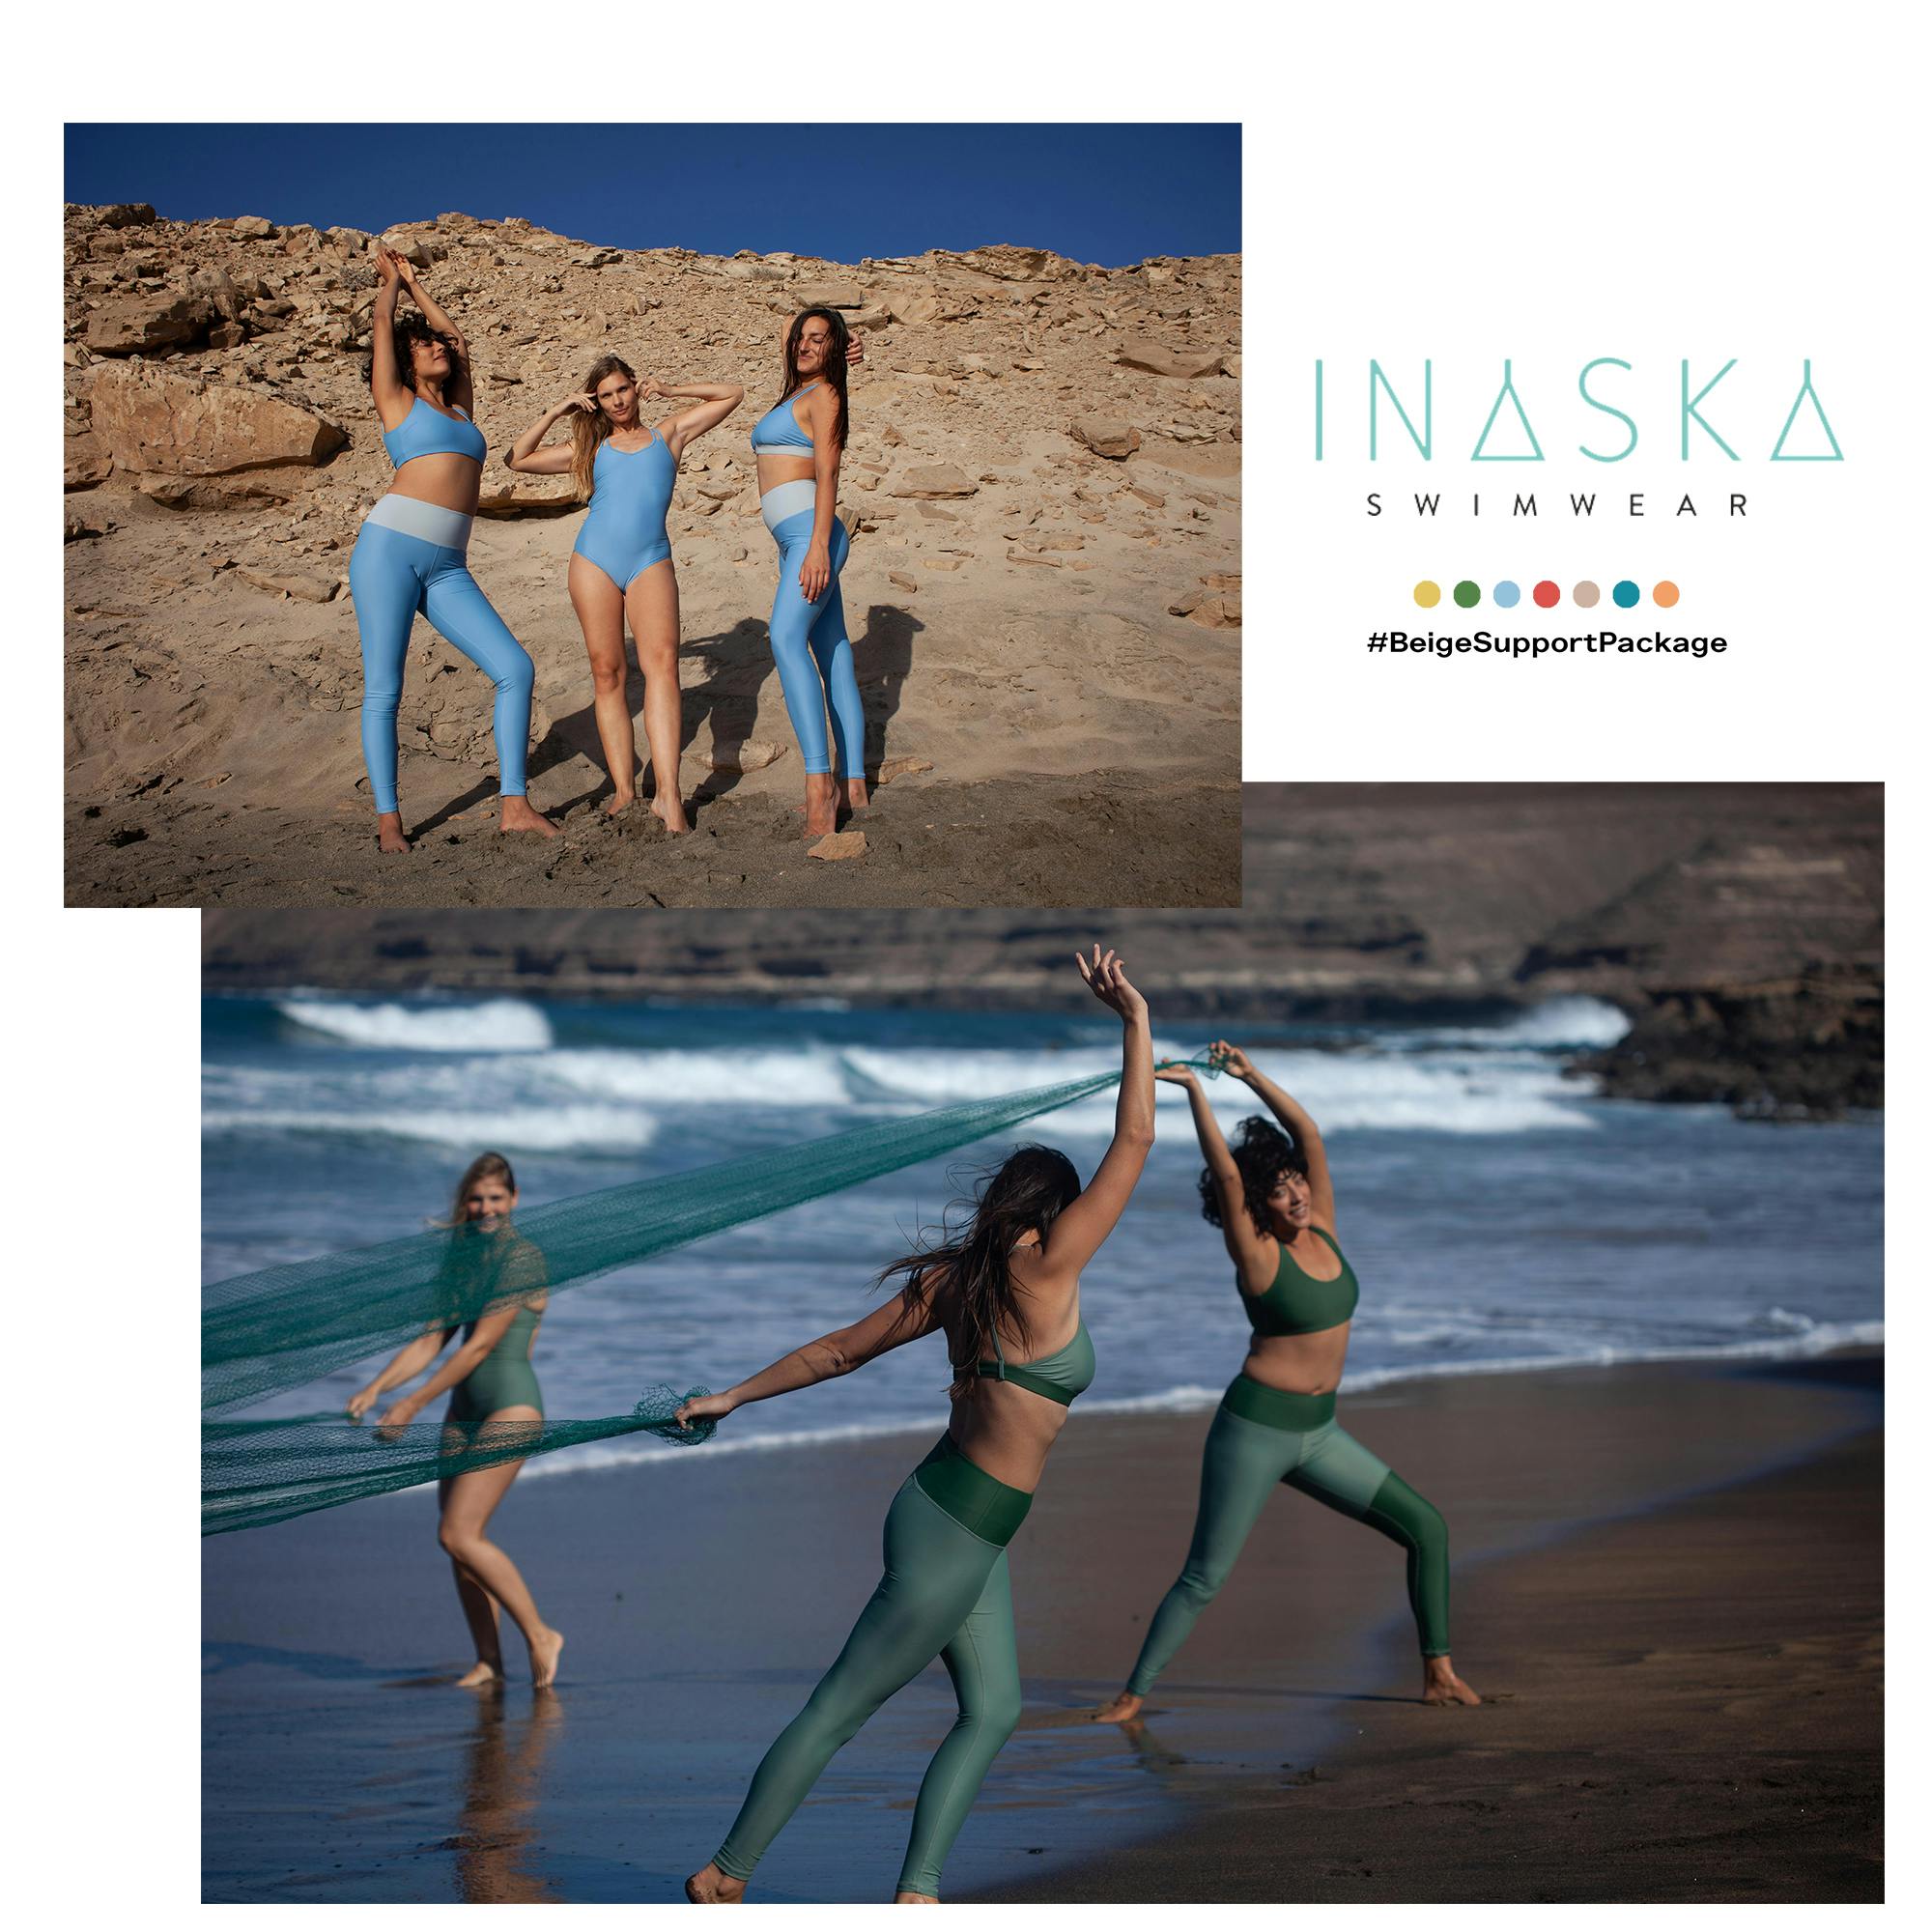 #BeigeSupportPackage: Hallo, wir sind Inaska Swimwear